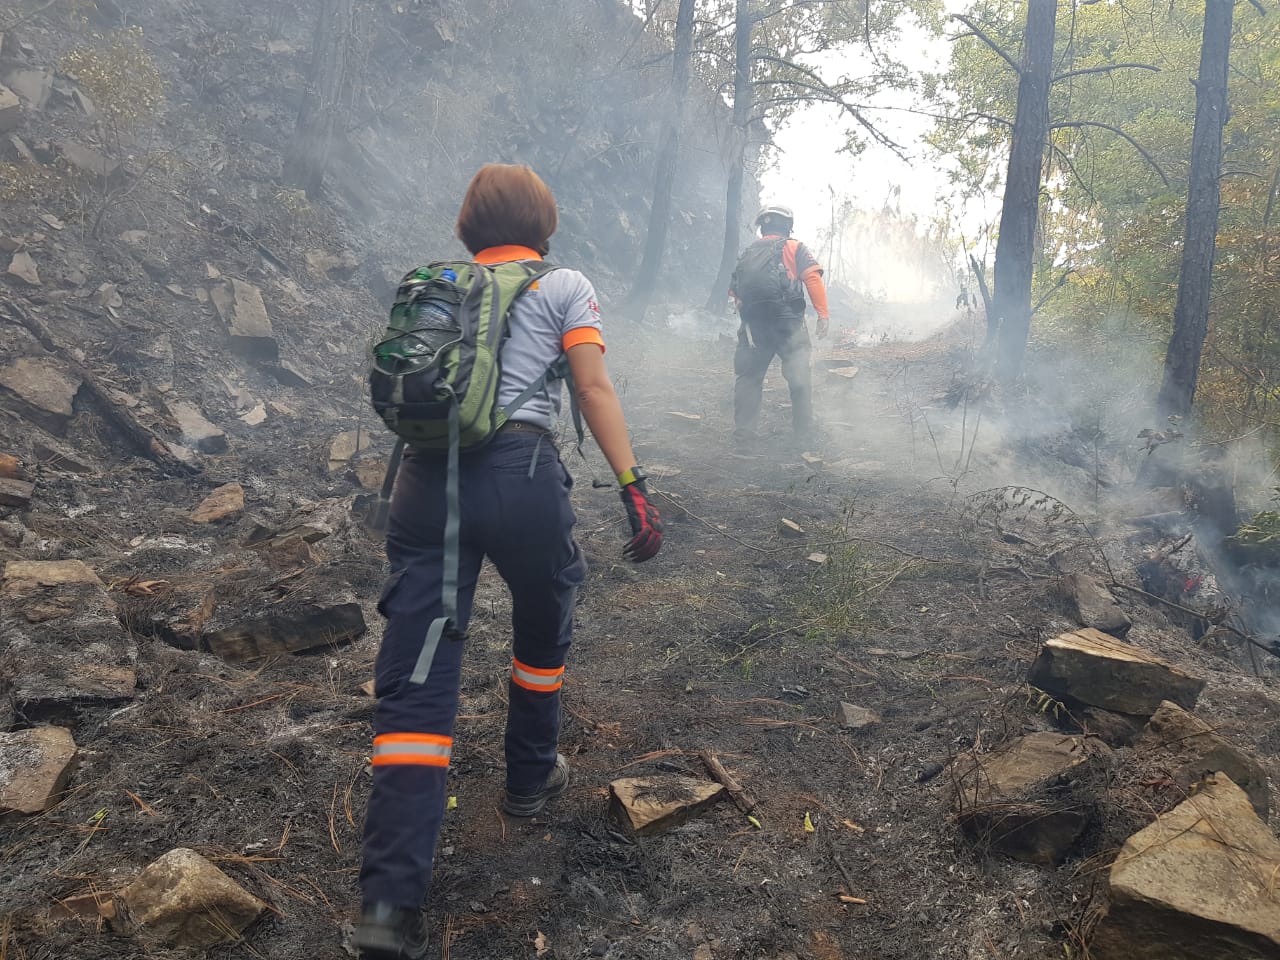 Incendio forestal La Muralla, en Nuevo León, es controlado